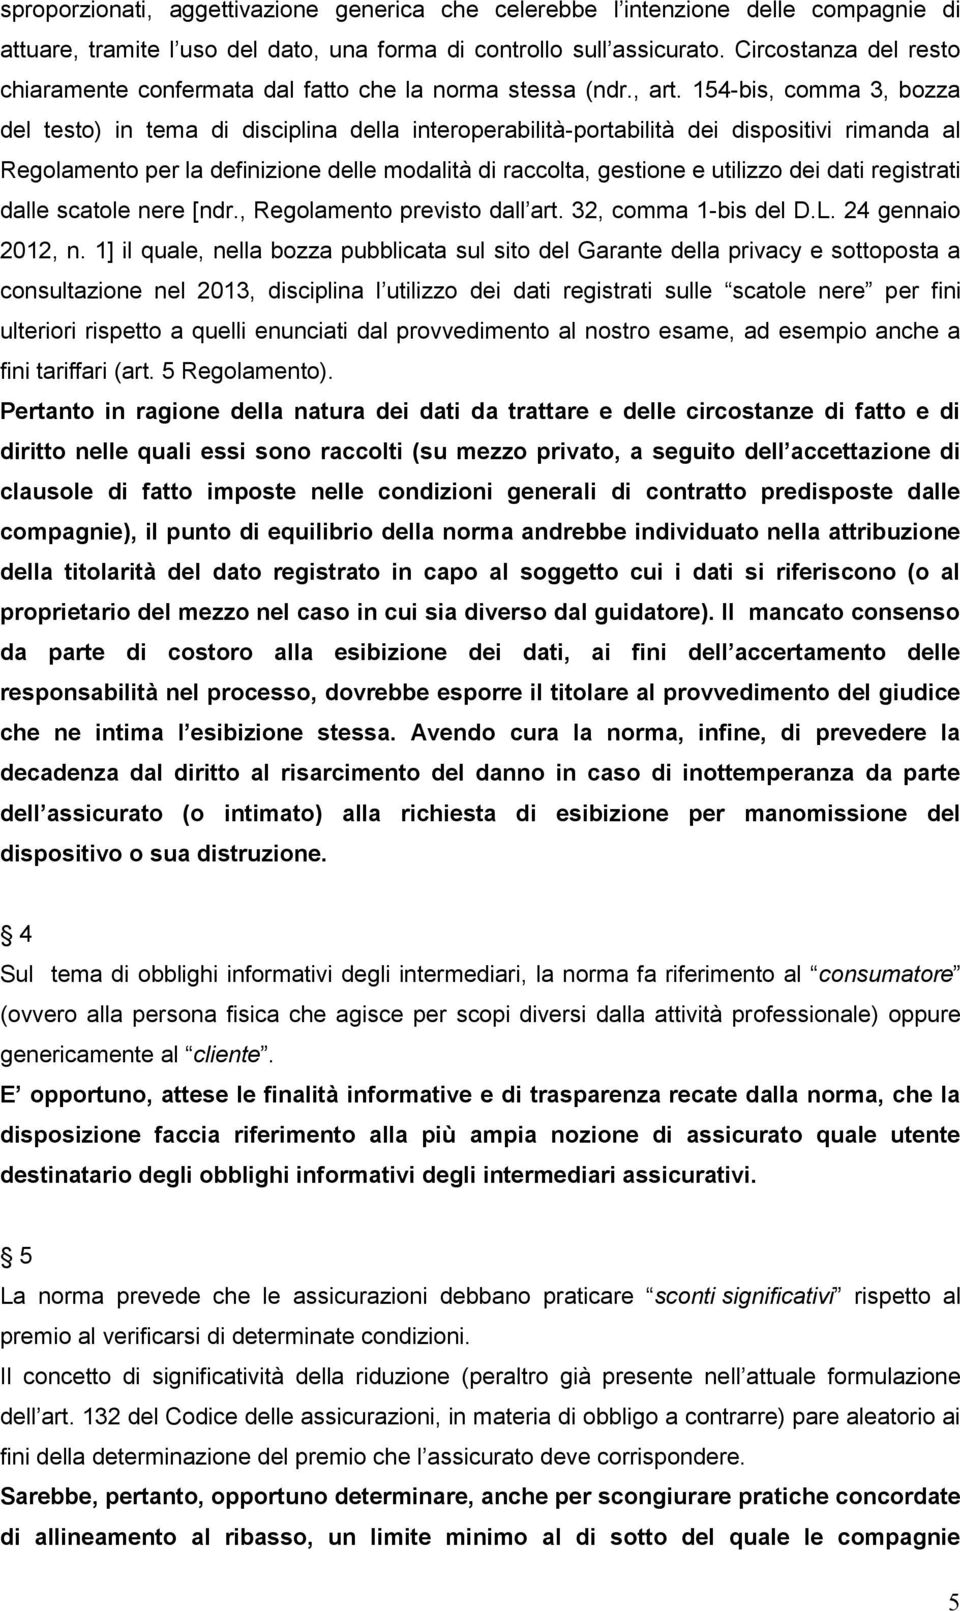 154-bis, comma 3, bozza del testo) in tema di disciplina della interoperabilità-portabilità dei dispositivi rimanda al Regolamento per la definizione delle modalità di raccolta, gestione e utilizzo